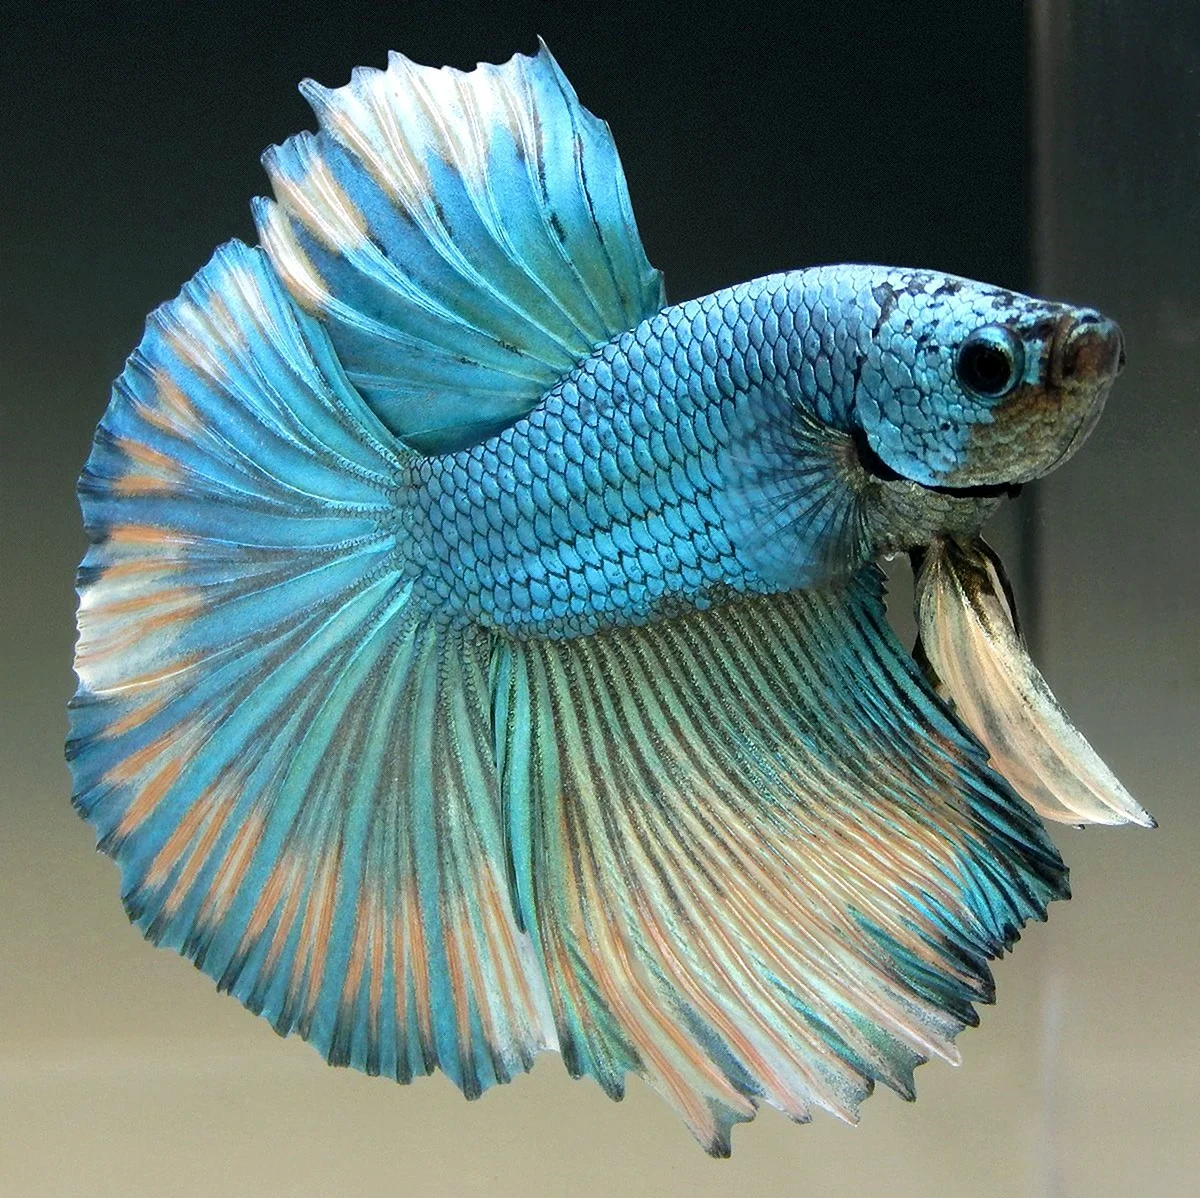 Петушок рыбка коронохвостый синий. Красивое животное